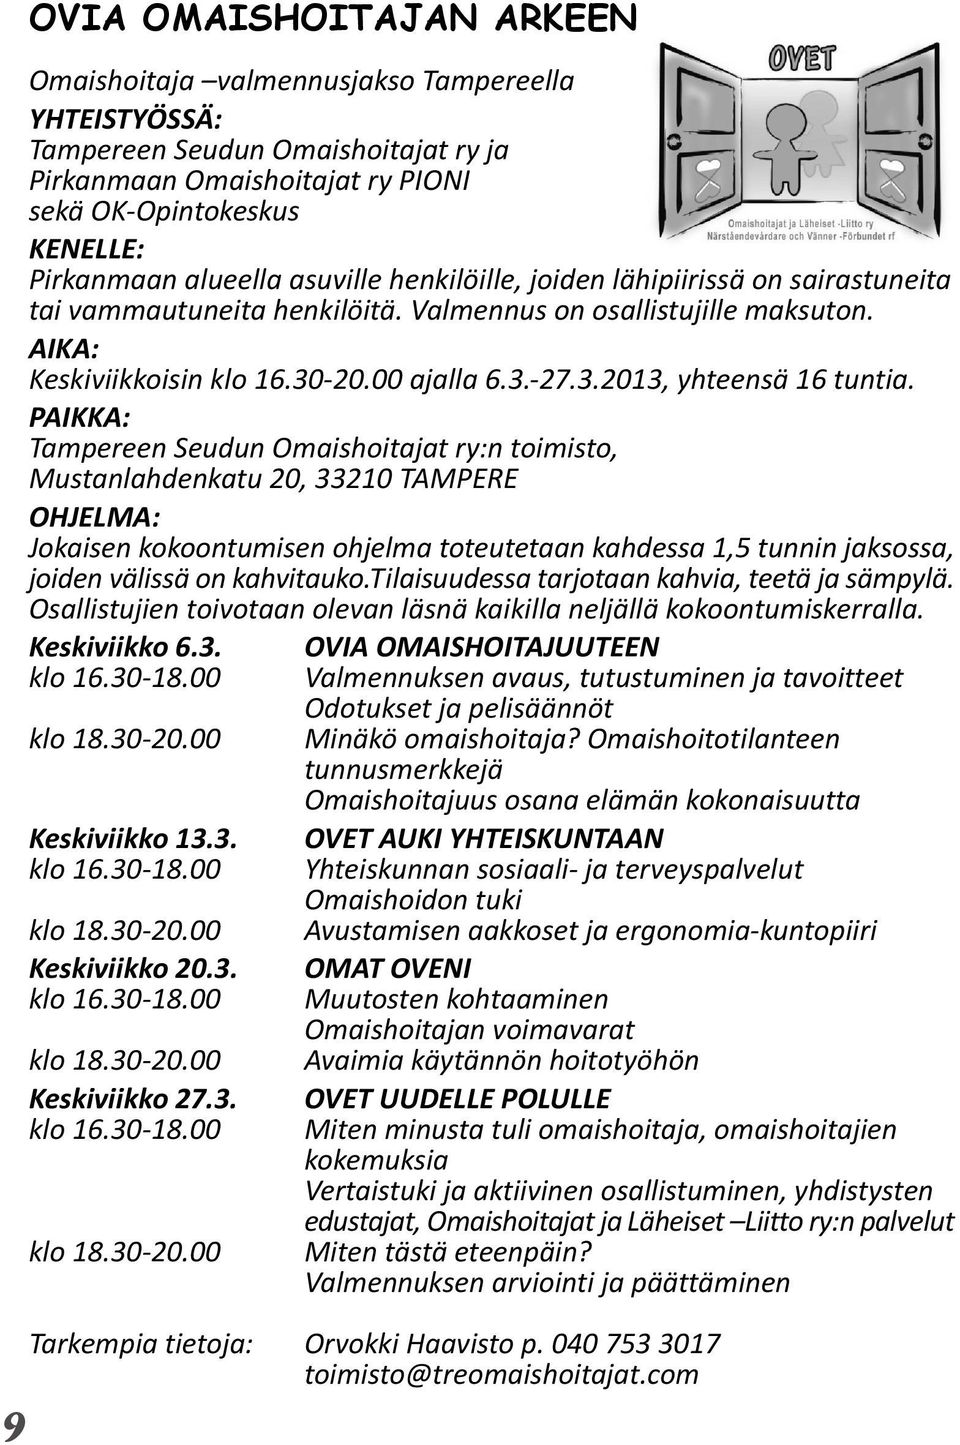 PAIKKA: Tampereen Seudun Omaishoitajat ry:n toimisto, Mustanlahdenkatu 20, 33210 TAMPERE OHJELMA: Jokaisen kokoontumisen ohjelma toteutetaan kahdessa 1,5 tunnin jaksossa, joiden välissä on kahvitauko.